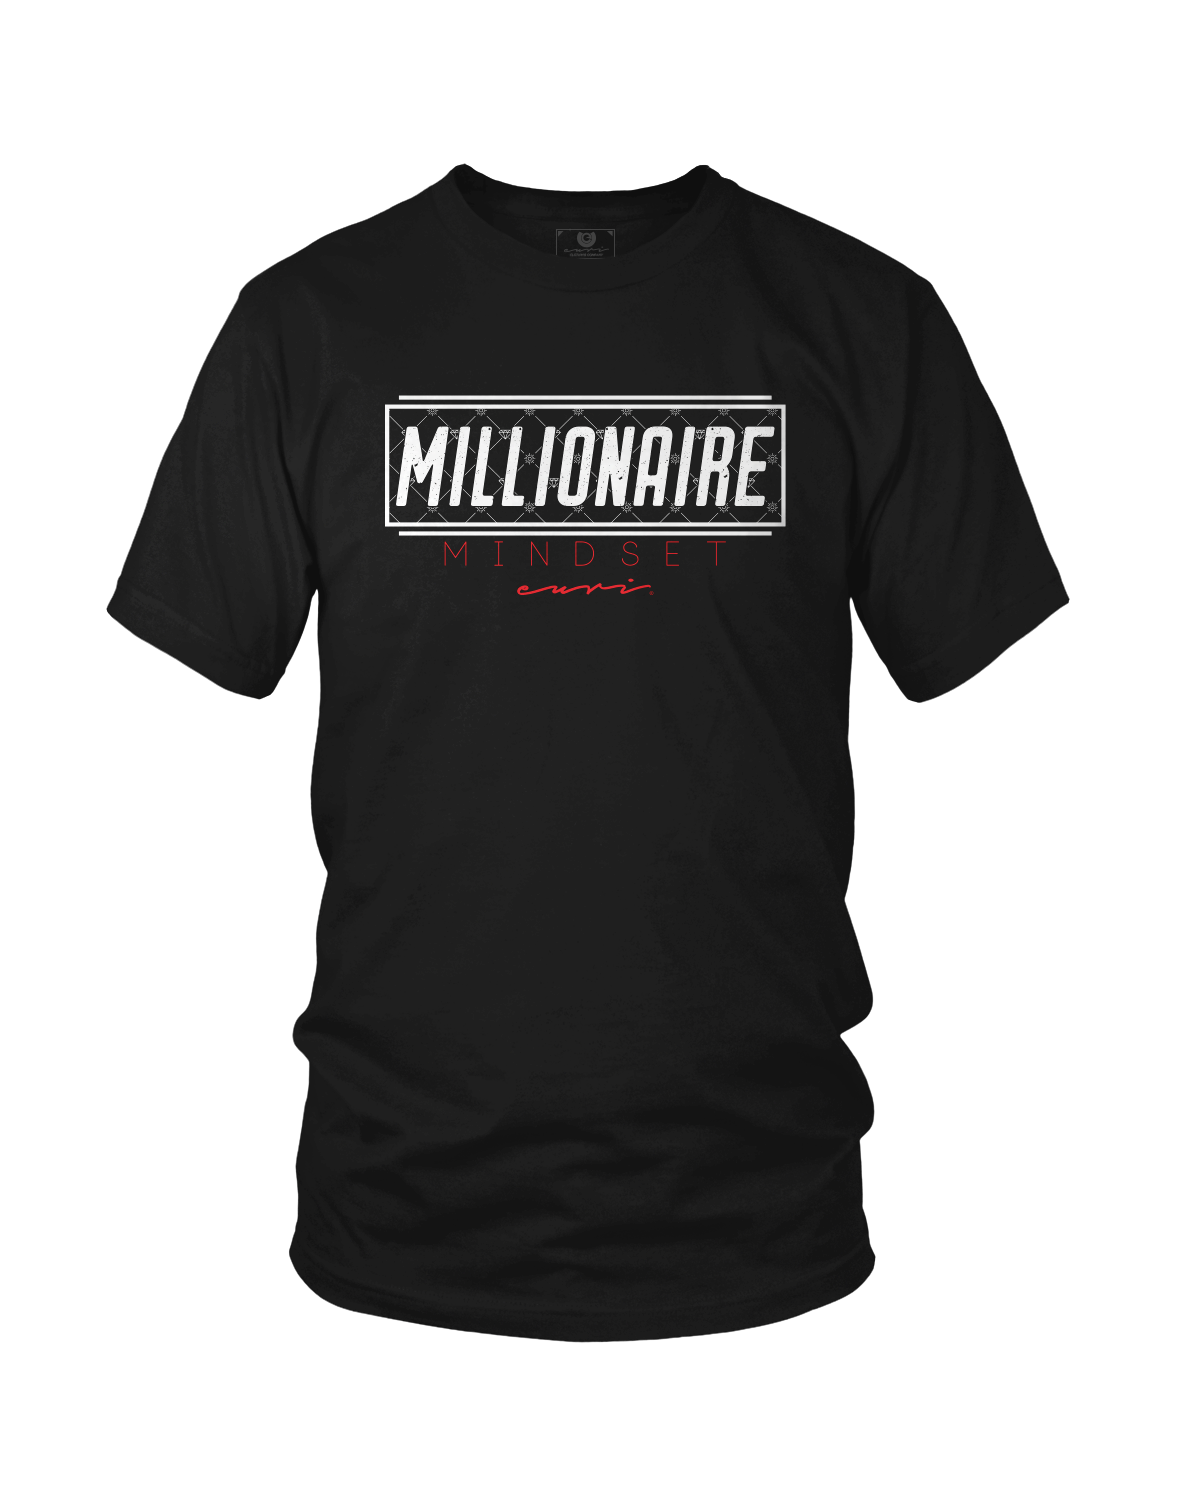 Millionaire Mindset - Euri Clothing